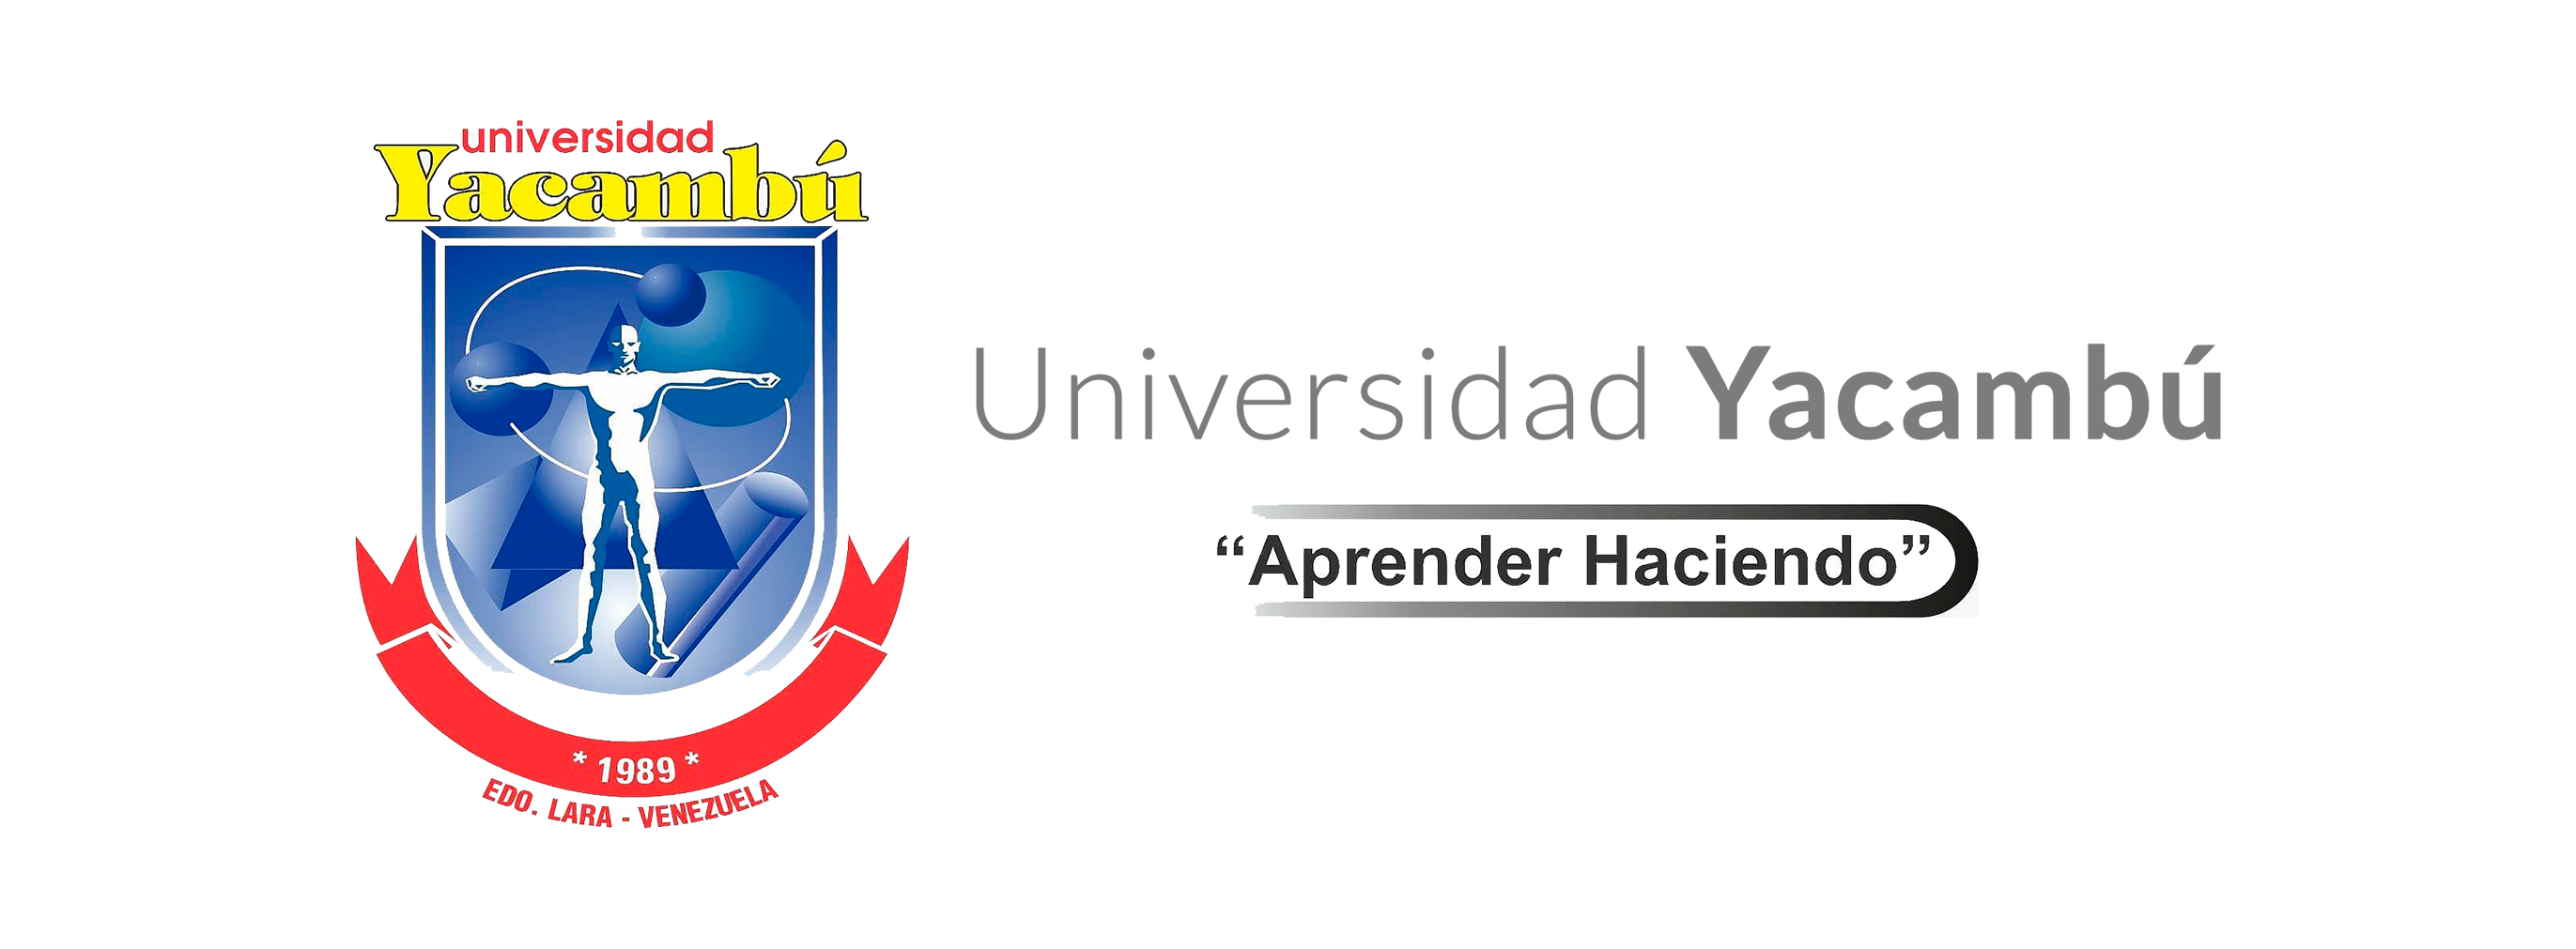 Universidad de Yacambu2